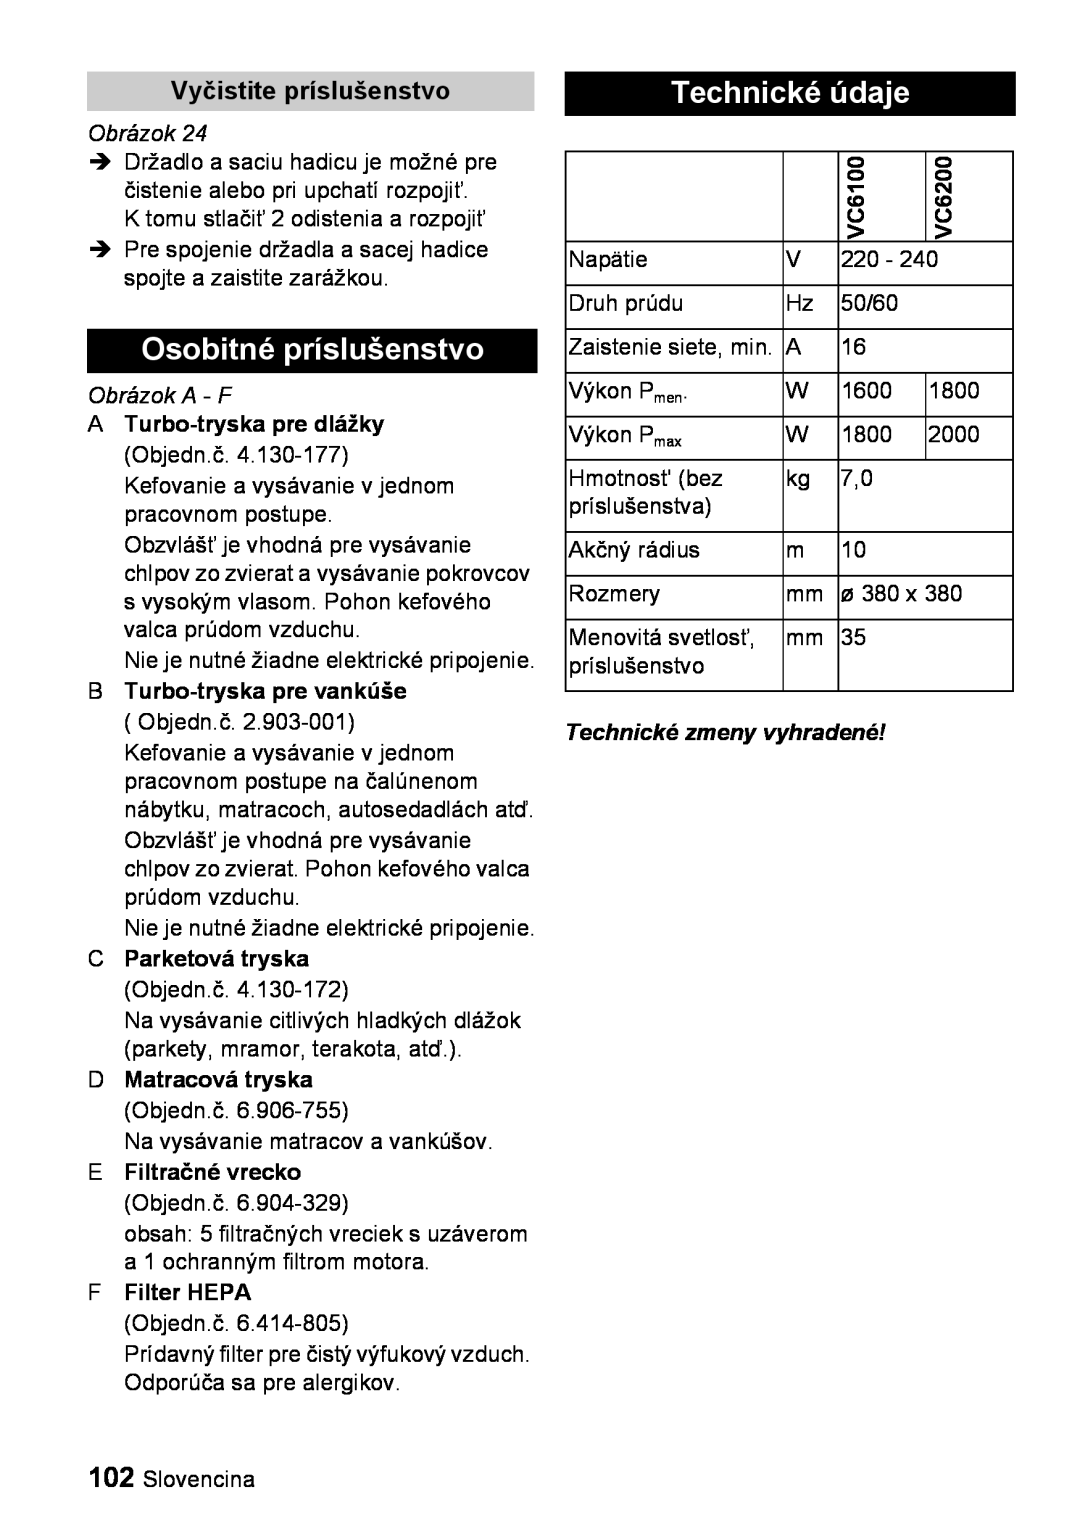 Karcher VC 6100 Osobitné príslušenstvo, Technické údaje, Vyčistite príslušenstvo, Obrázok A - F, FFilter HEPA Objedn.č 